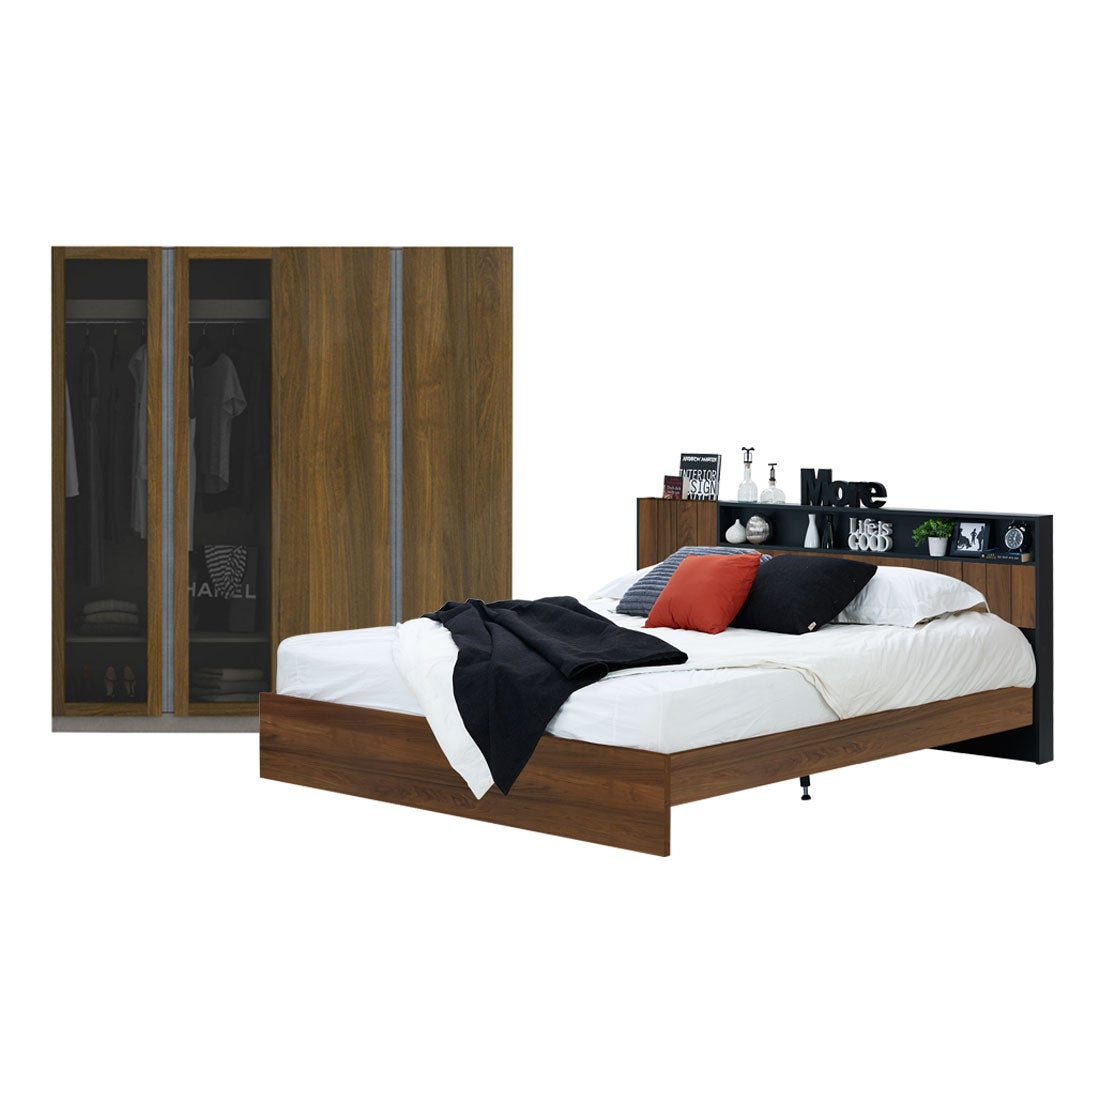 ชุดห้องนอน 6 ฟุต รุ่น Diago & ตู้เสื้อผ้า Blox สีไม้เข้ม01